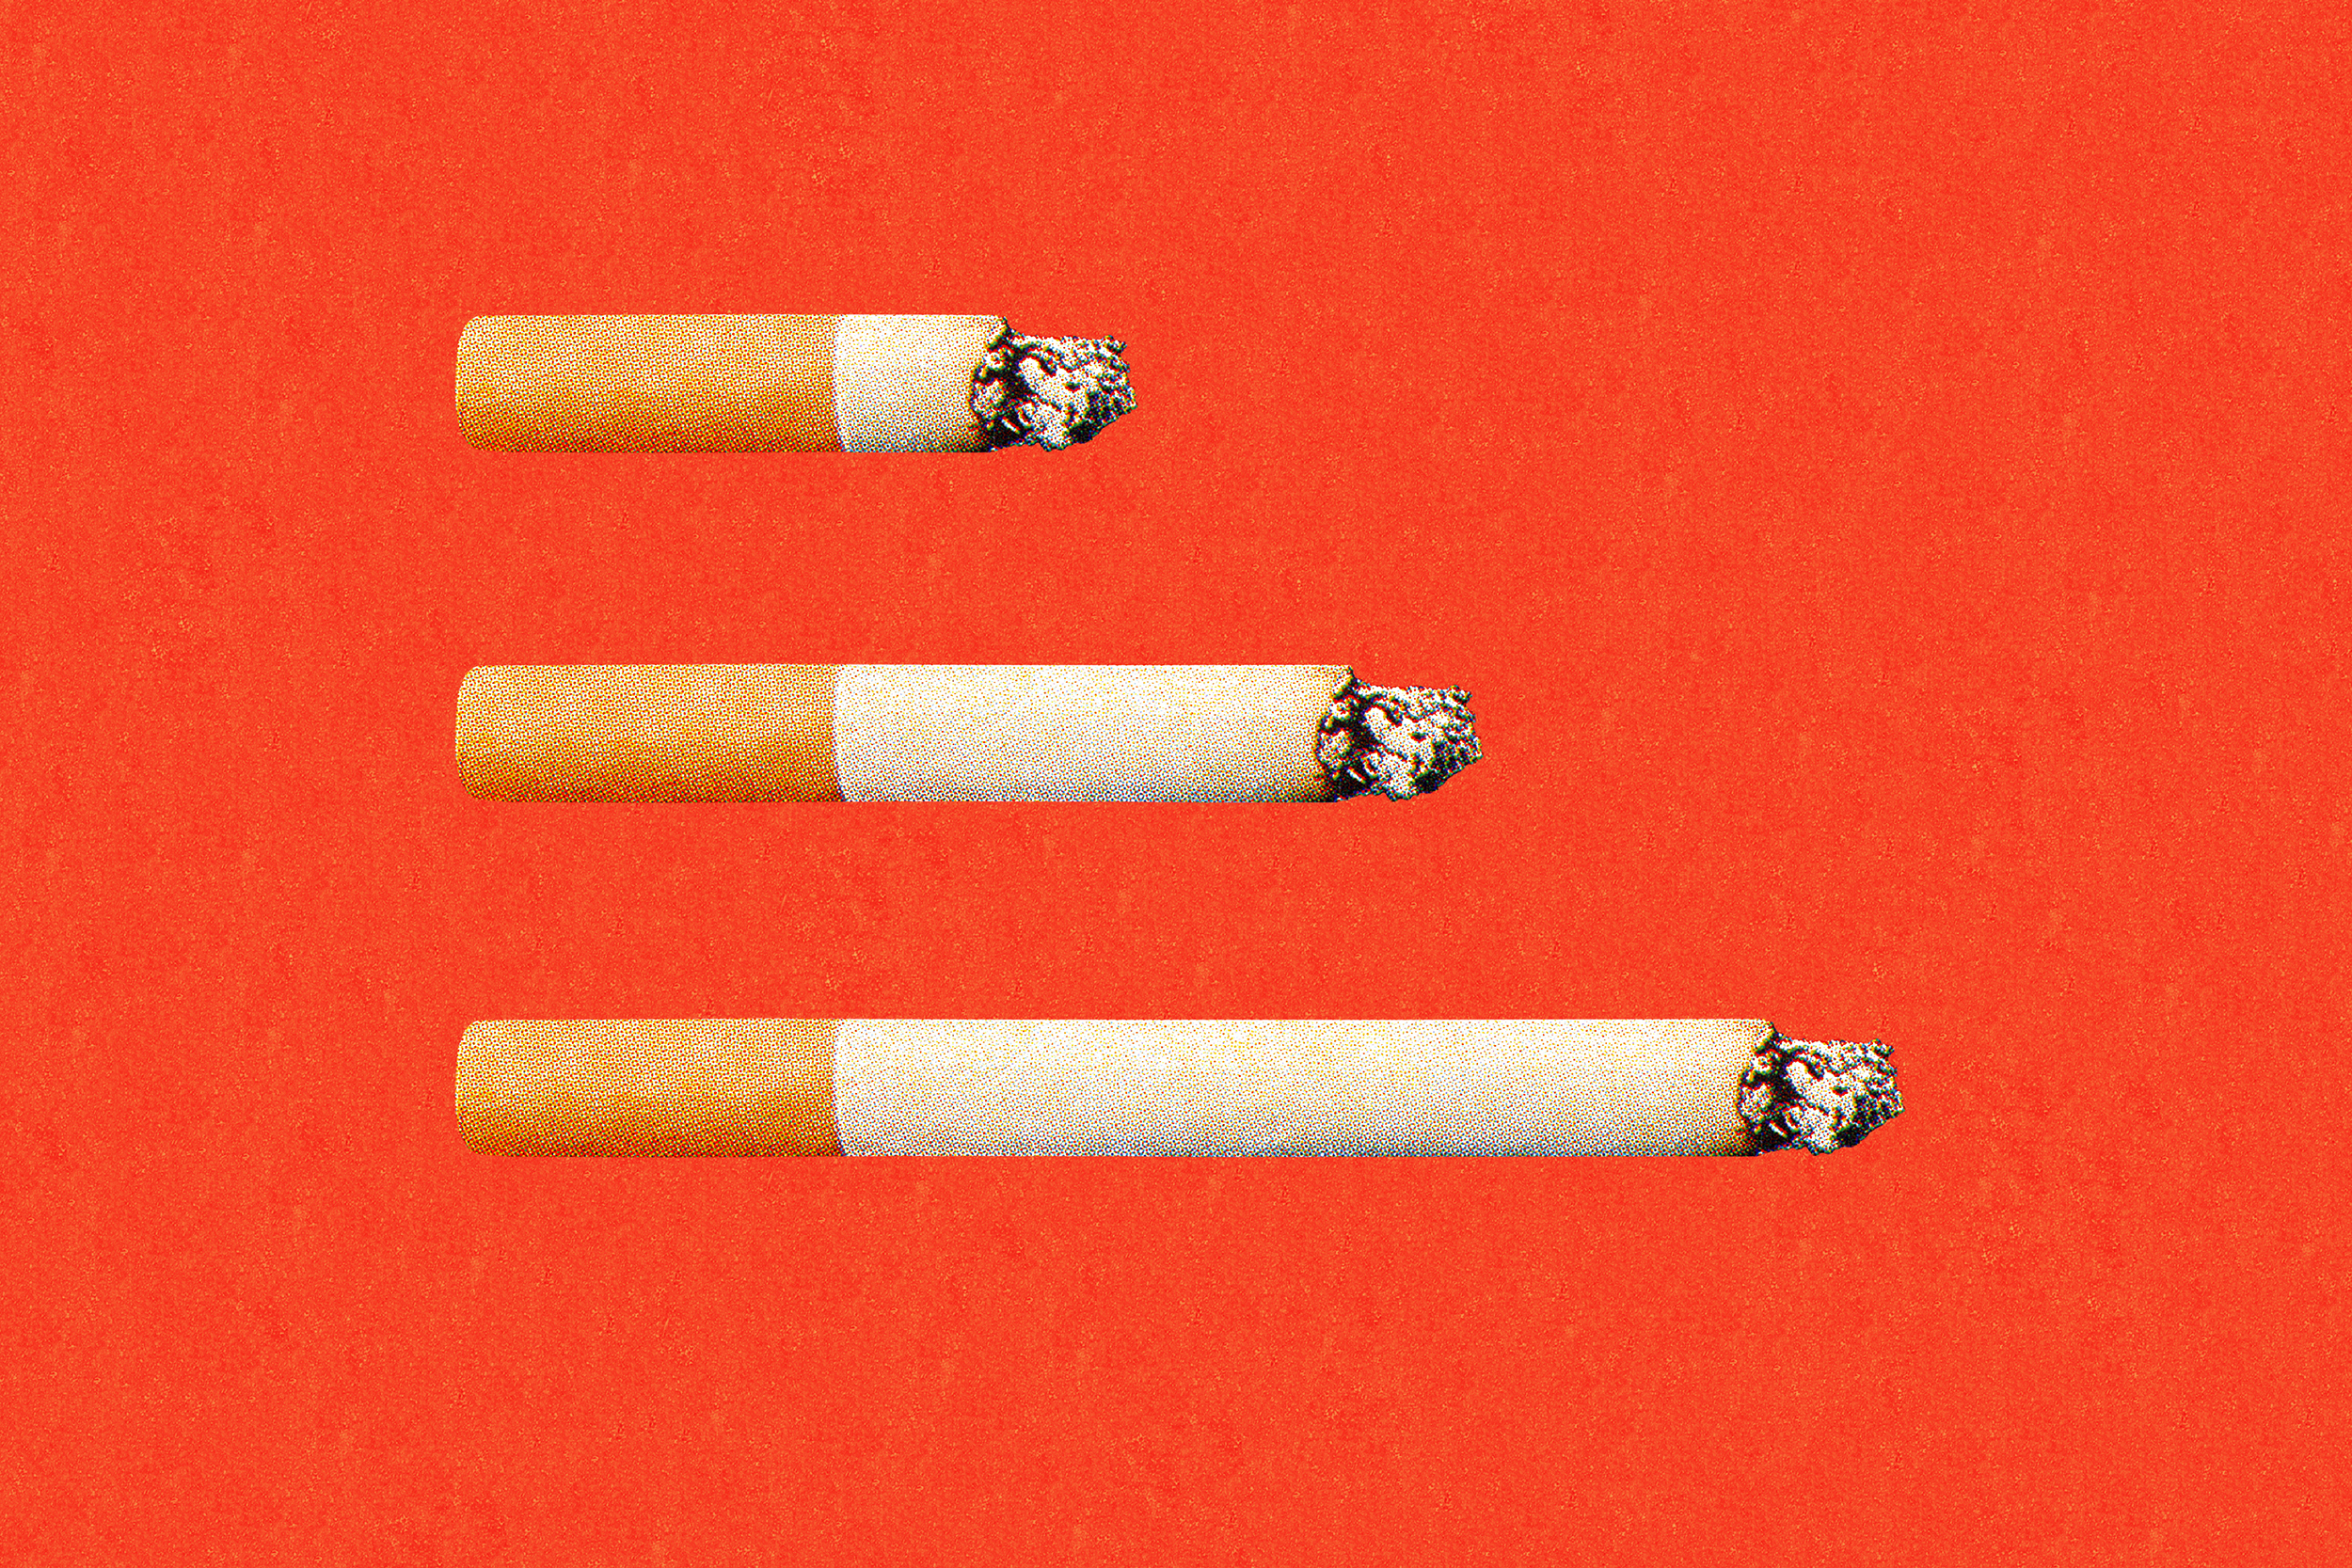 100 ways to quit smoking